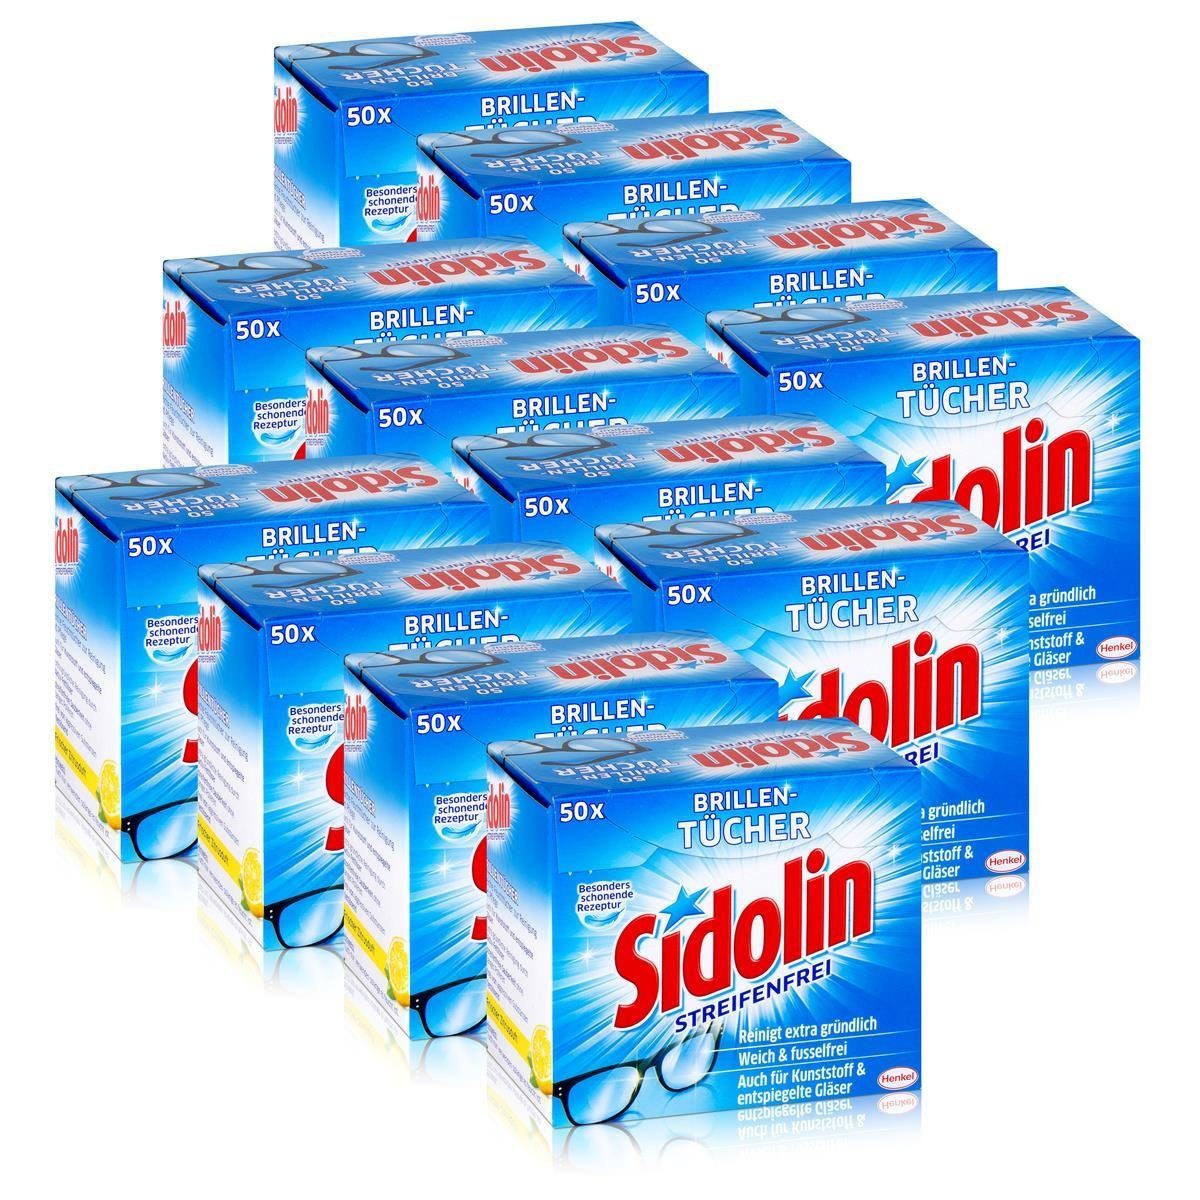 SIDOLIN Sidolin Brillen Putztücher 50 stk. Tücher - Reinigt extra gründlich (1 Reinigungstücher